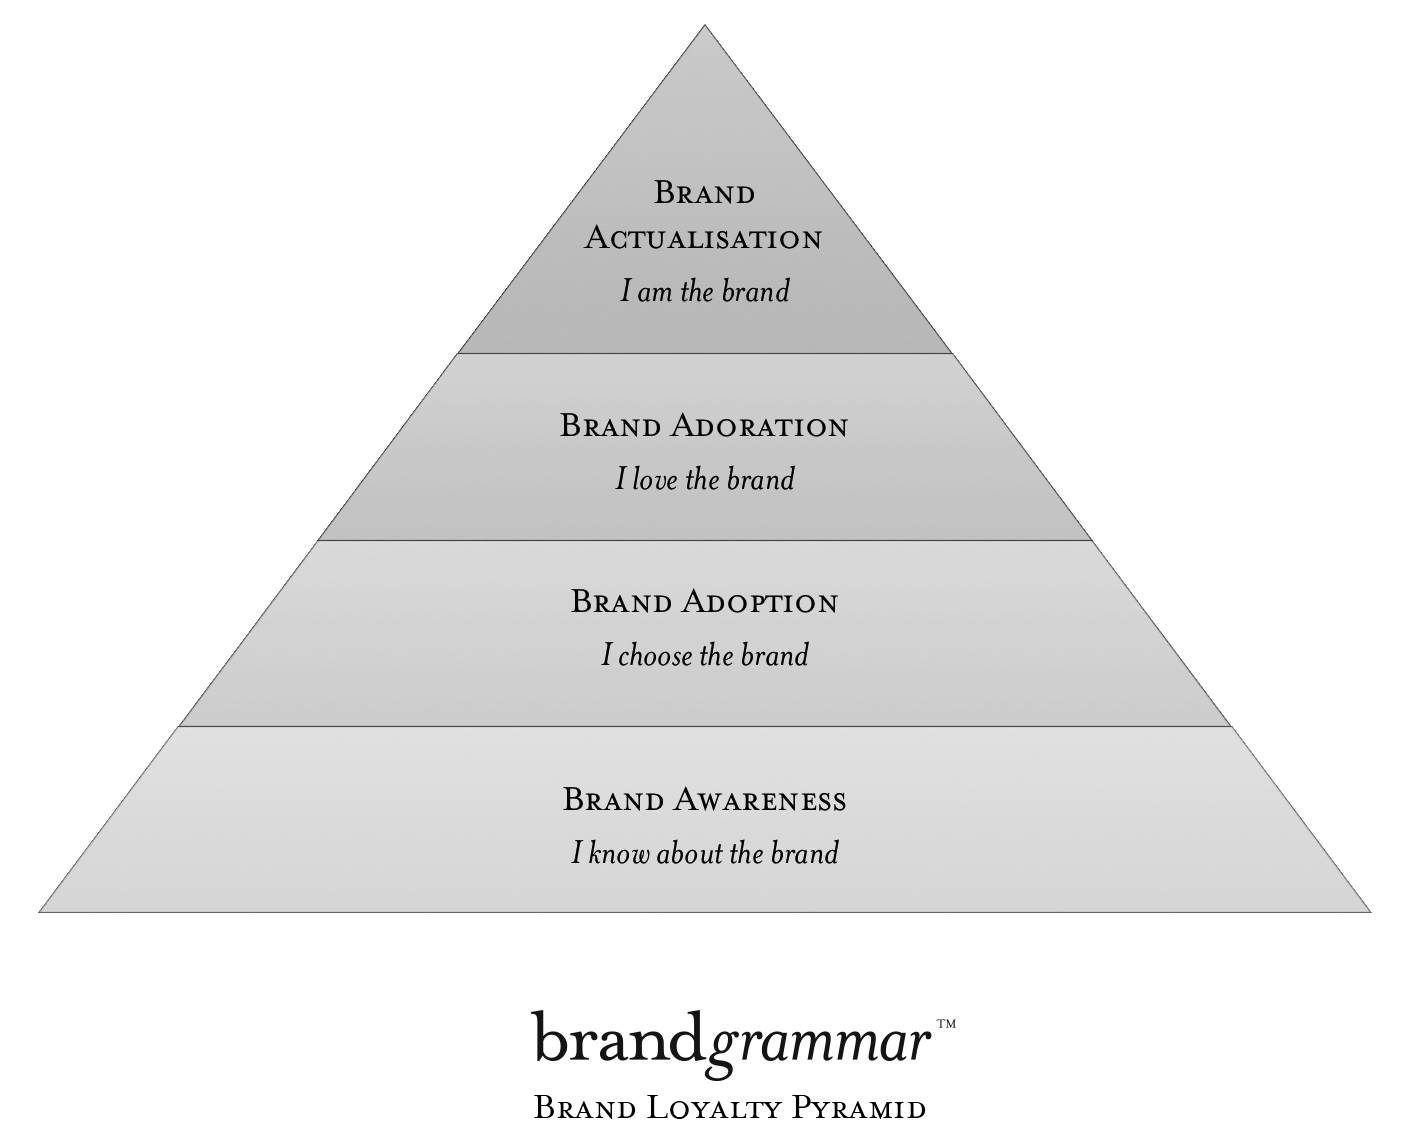 Does Your Brand Speak the New Symbolic Language of Brandsperanto